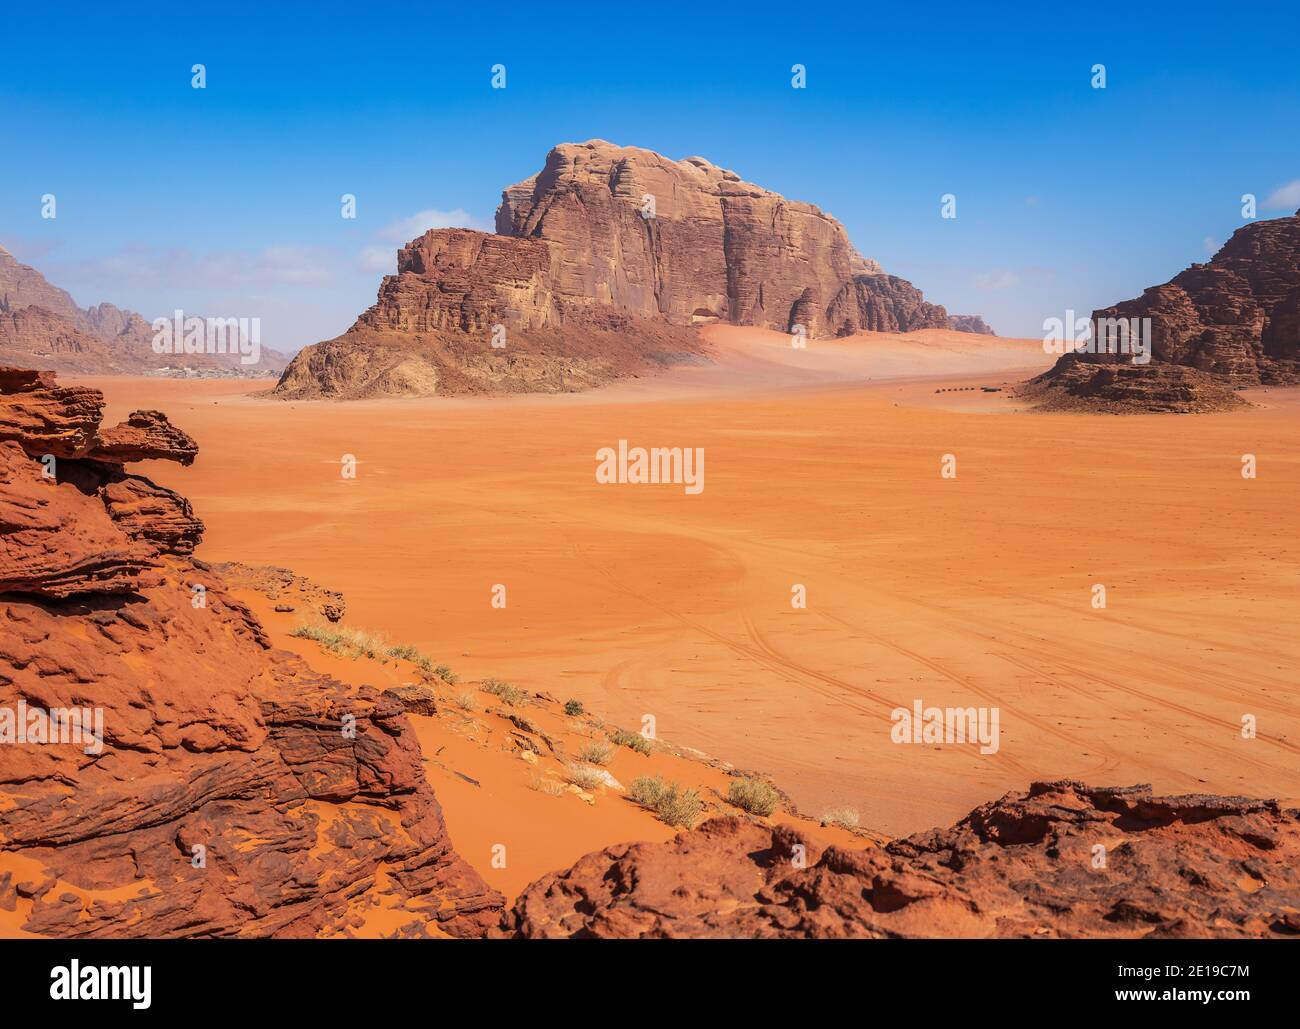 Wadi Rum, Jordanien. Khor al Ajram in der Wüste Wadi Rum, bekannt als Tal des Mondes. Stockfoto